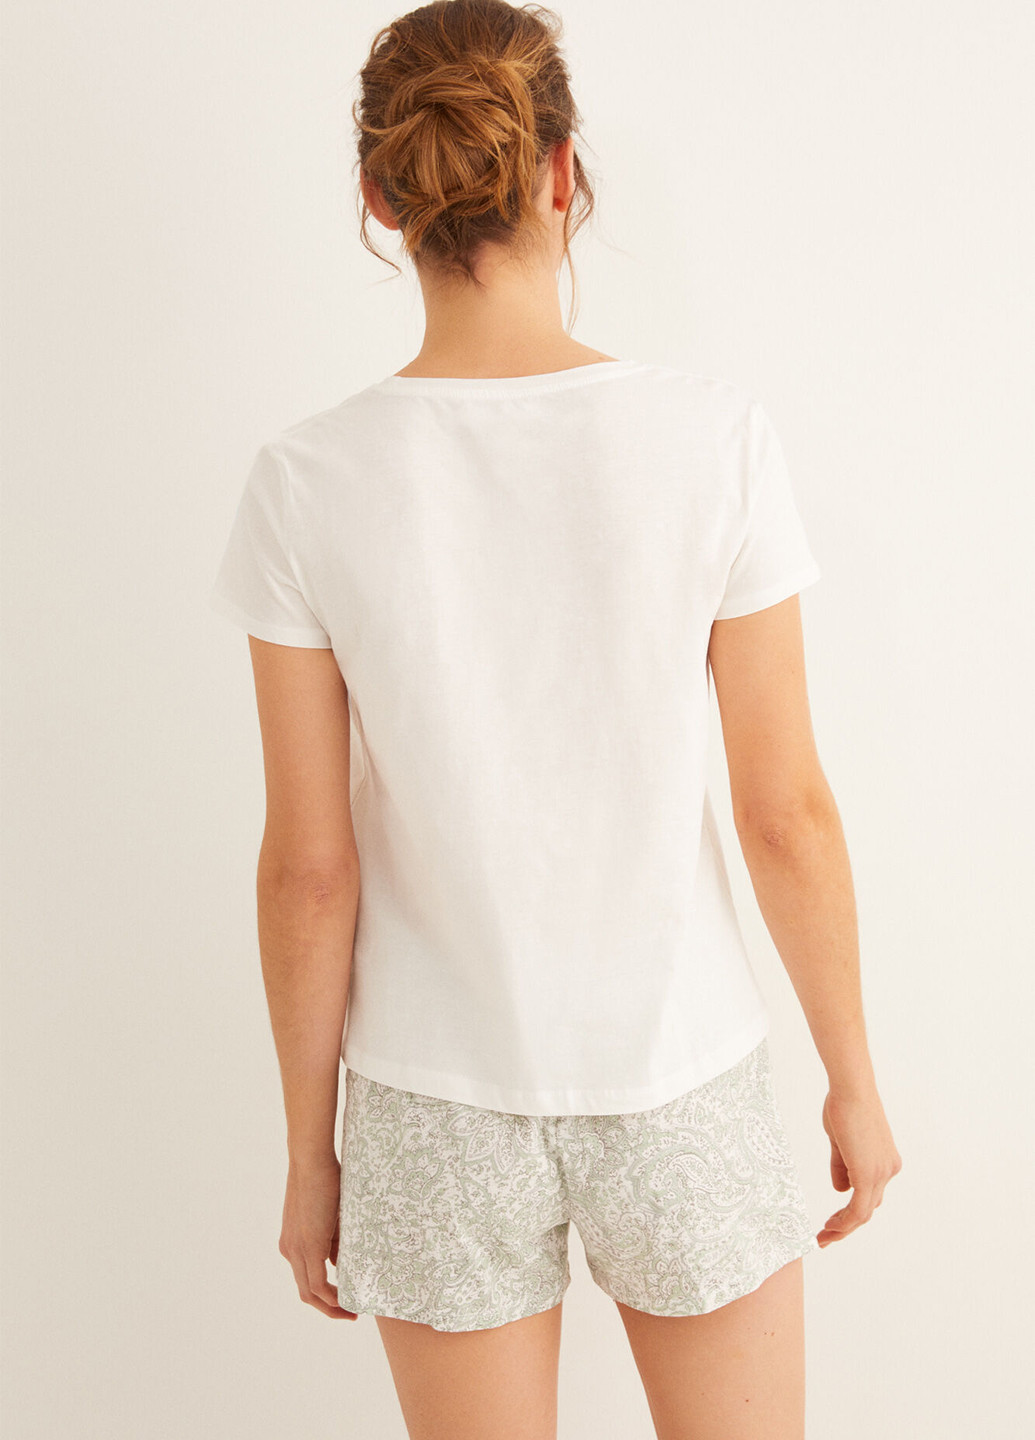 Белая всесезон пижама (футболка, шорты) футболка + шорты Women'secret